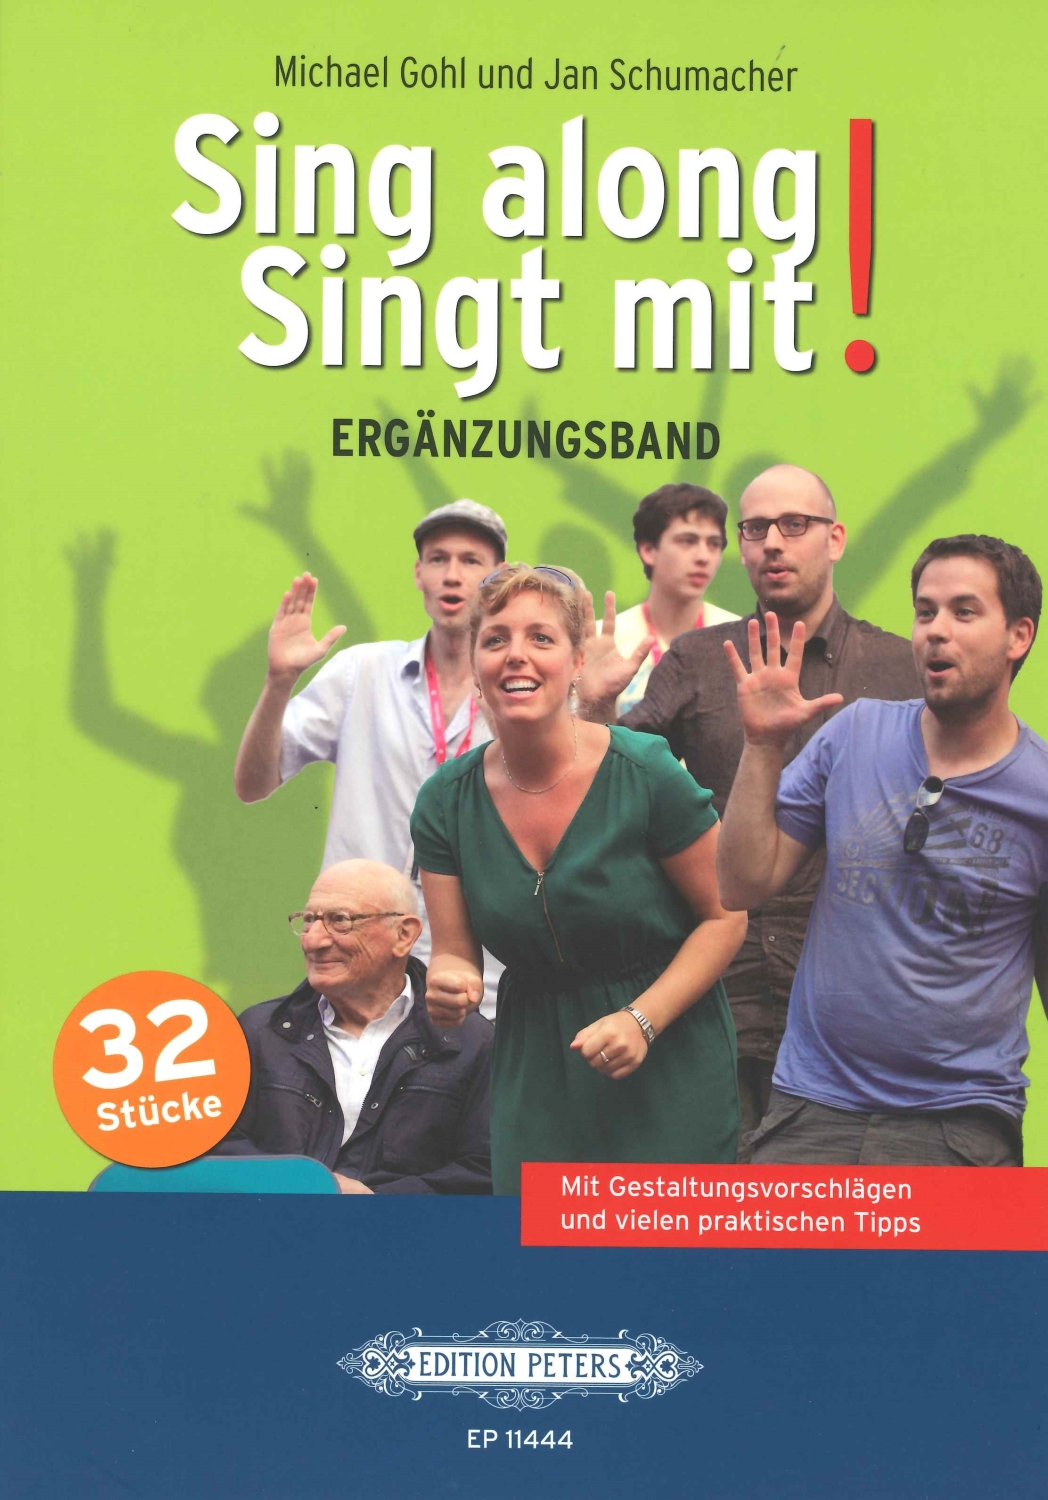 gohl-schumacher-sing-along-singt-mit-gch-_ergaenzu_0001.JPG